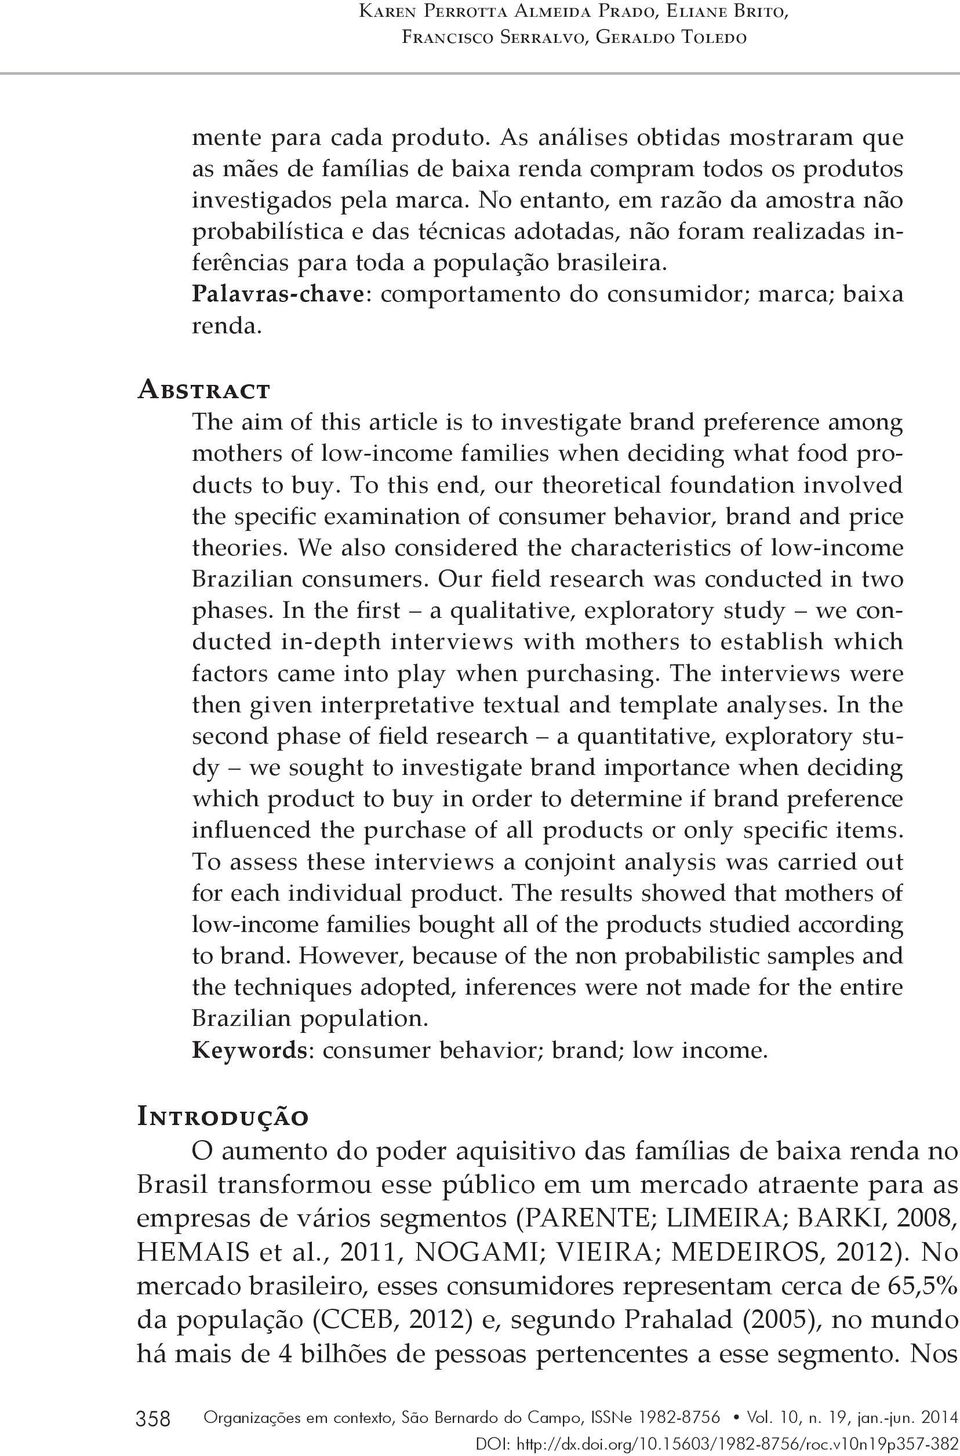 No entanto, em razão da amostra não probabilística e das técnicas adotadas, não foram realizadas inferências para toda a população brasileira.